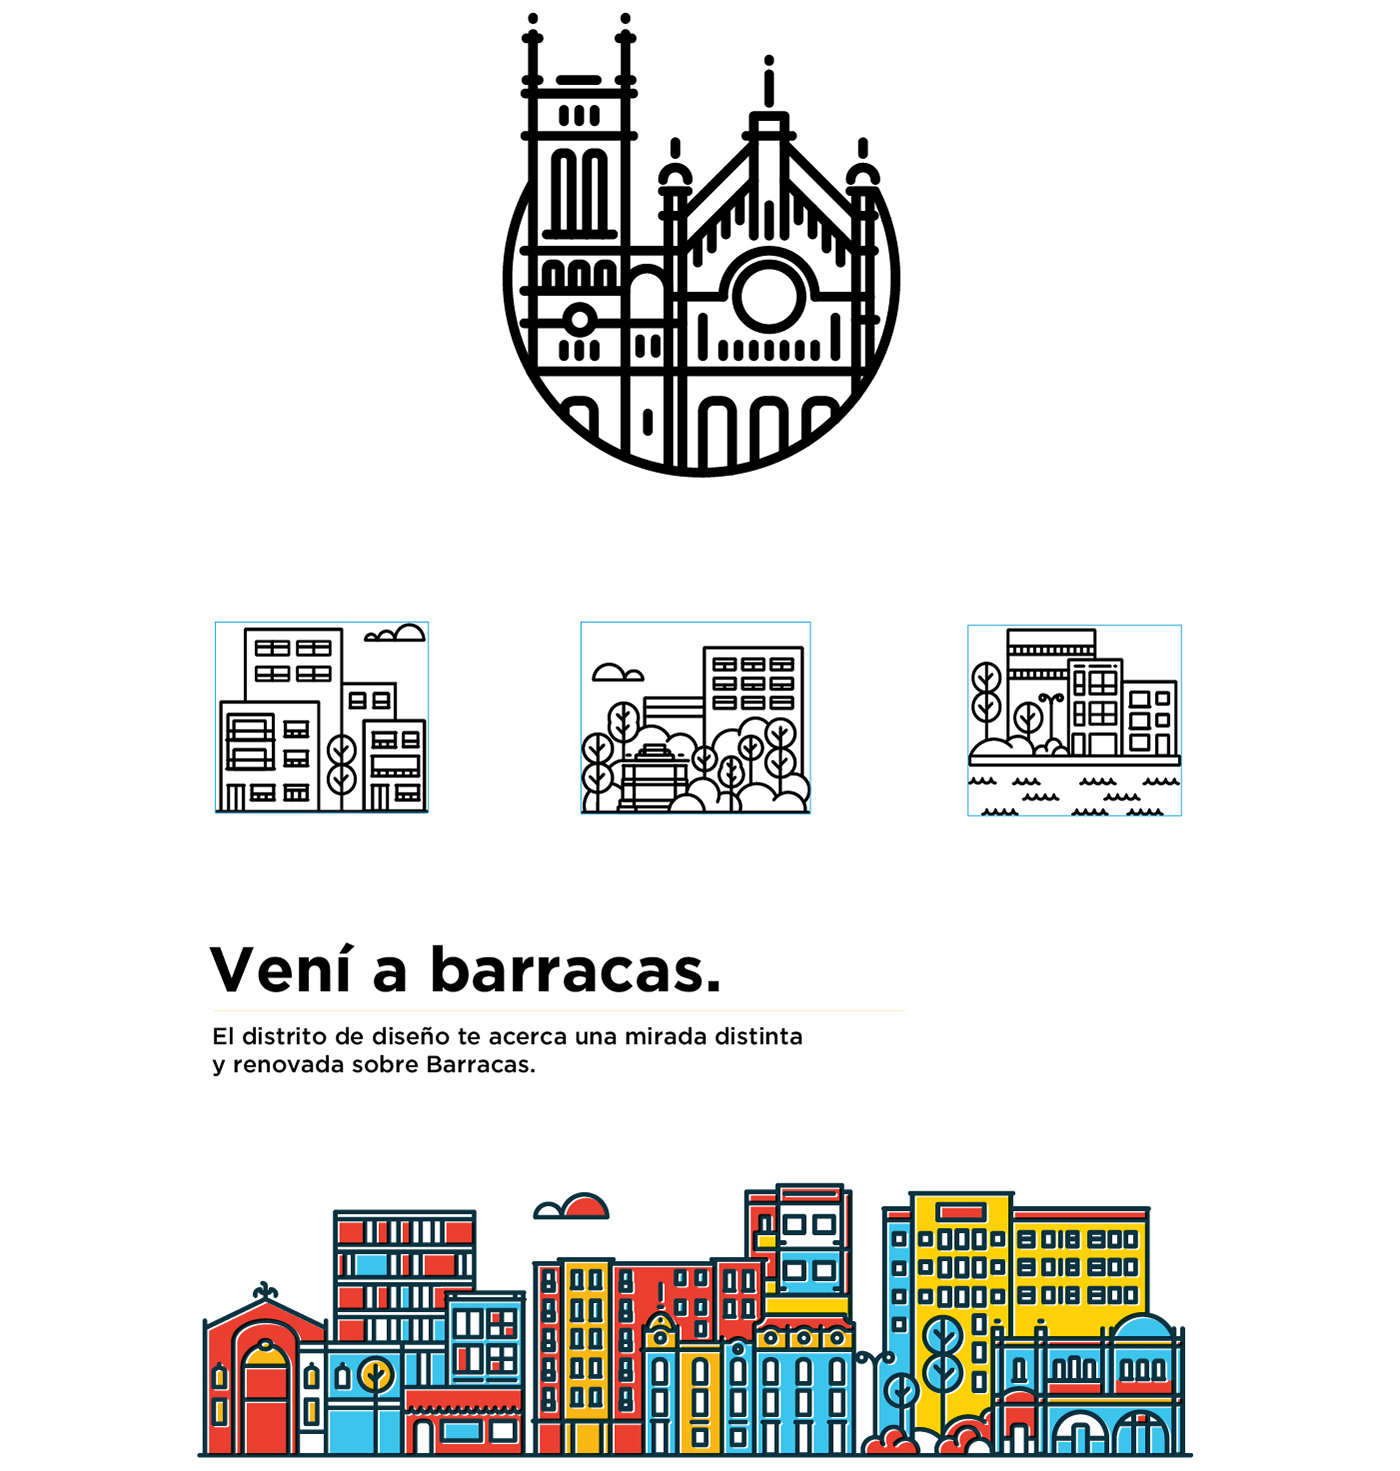 Mirar Barracas Totem map diseño gráfico diseño grafico interacción reflex reflejo espejo mirror neighborhood buenos aires argentina city